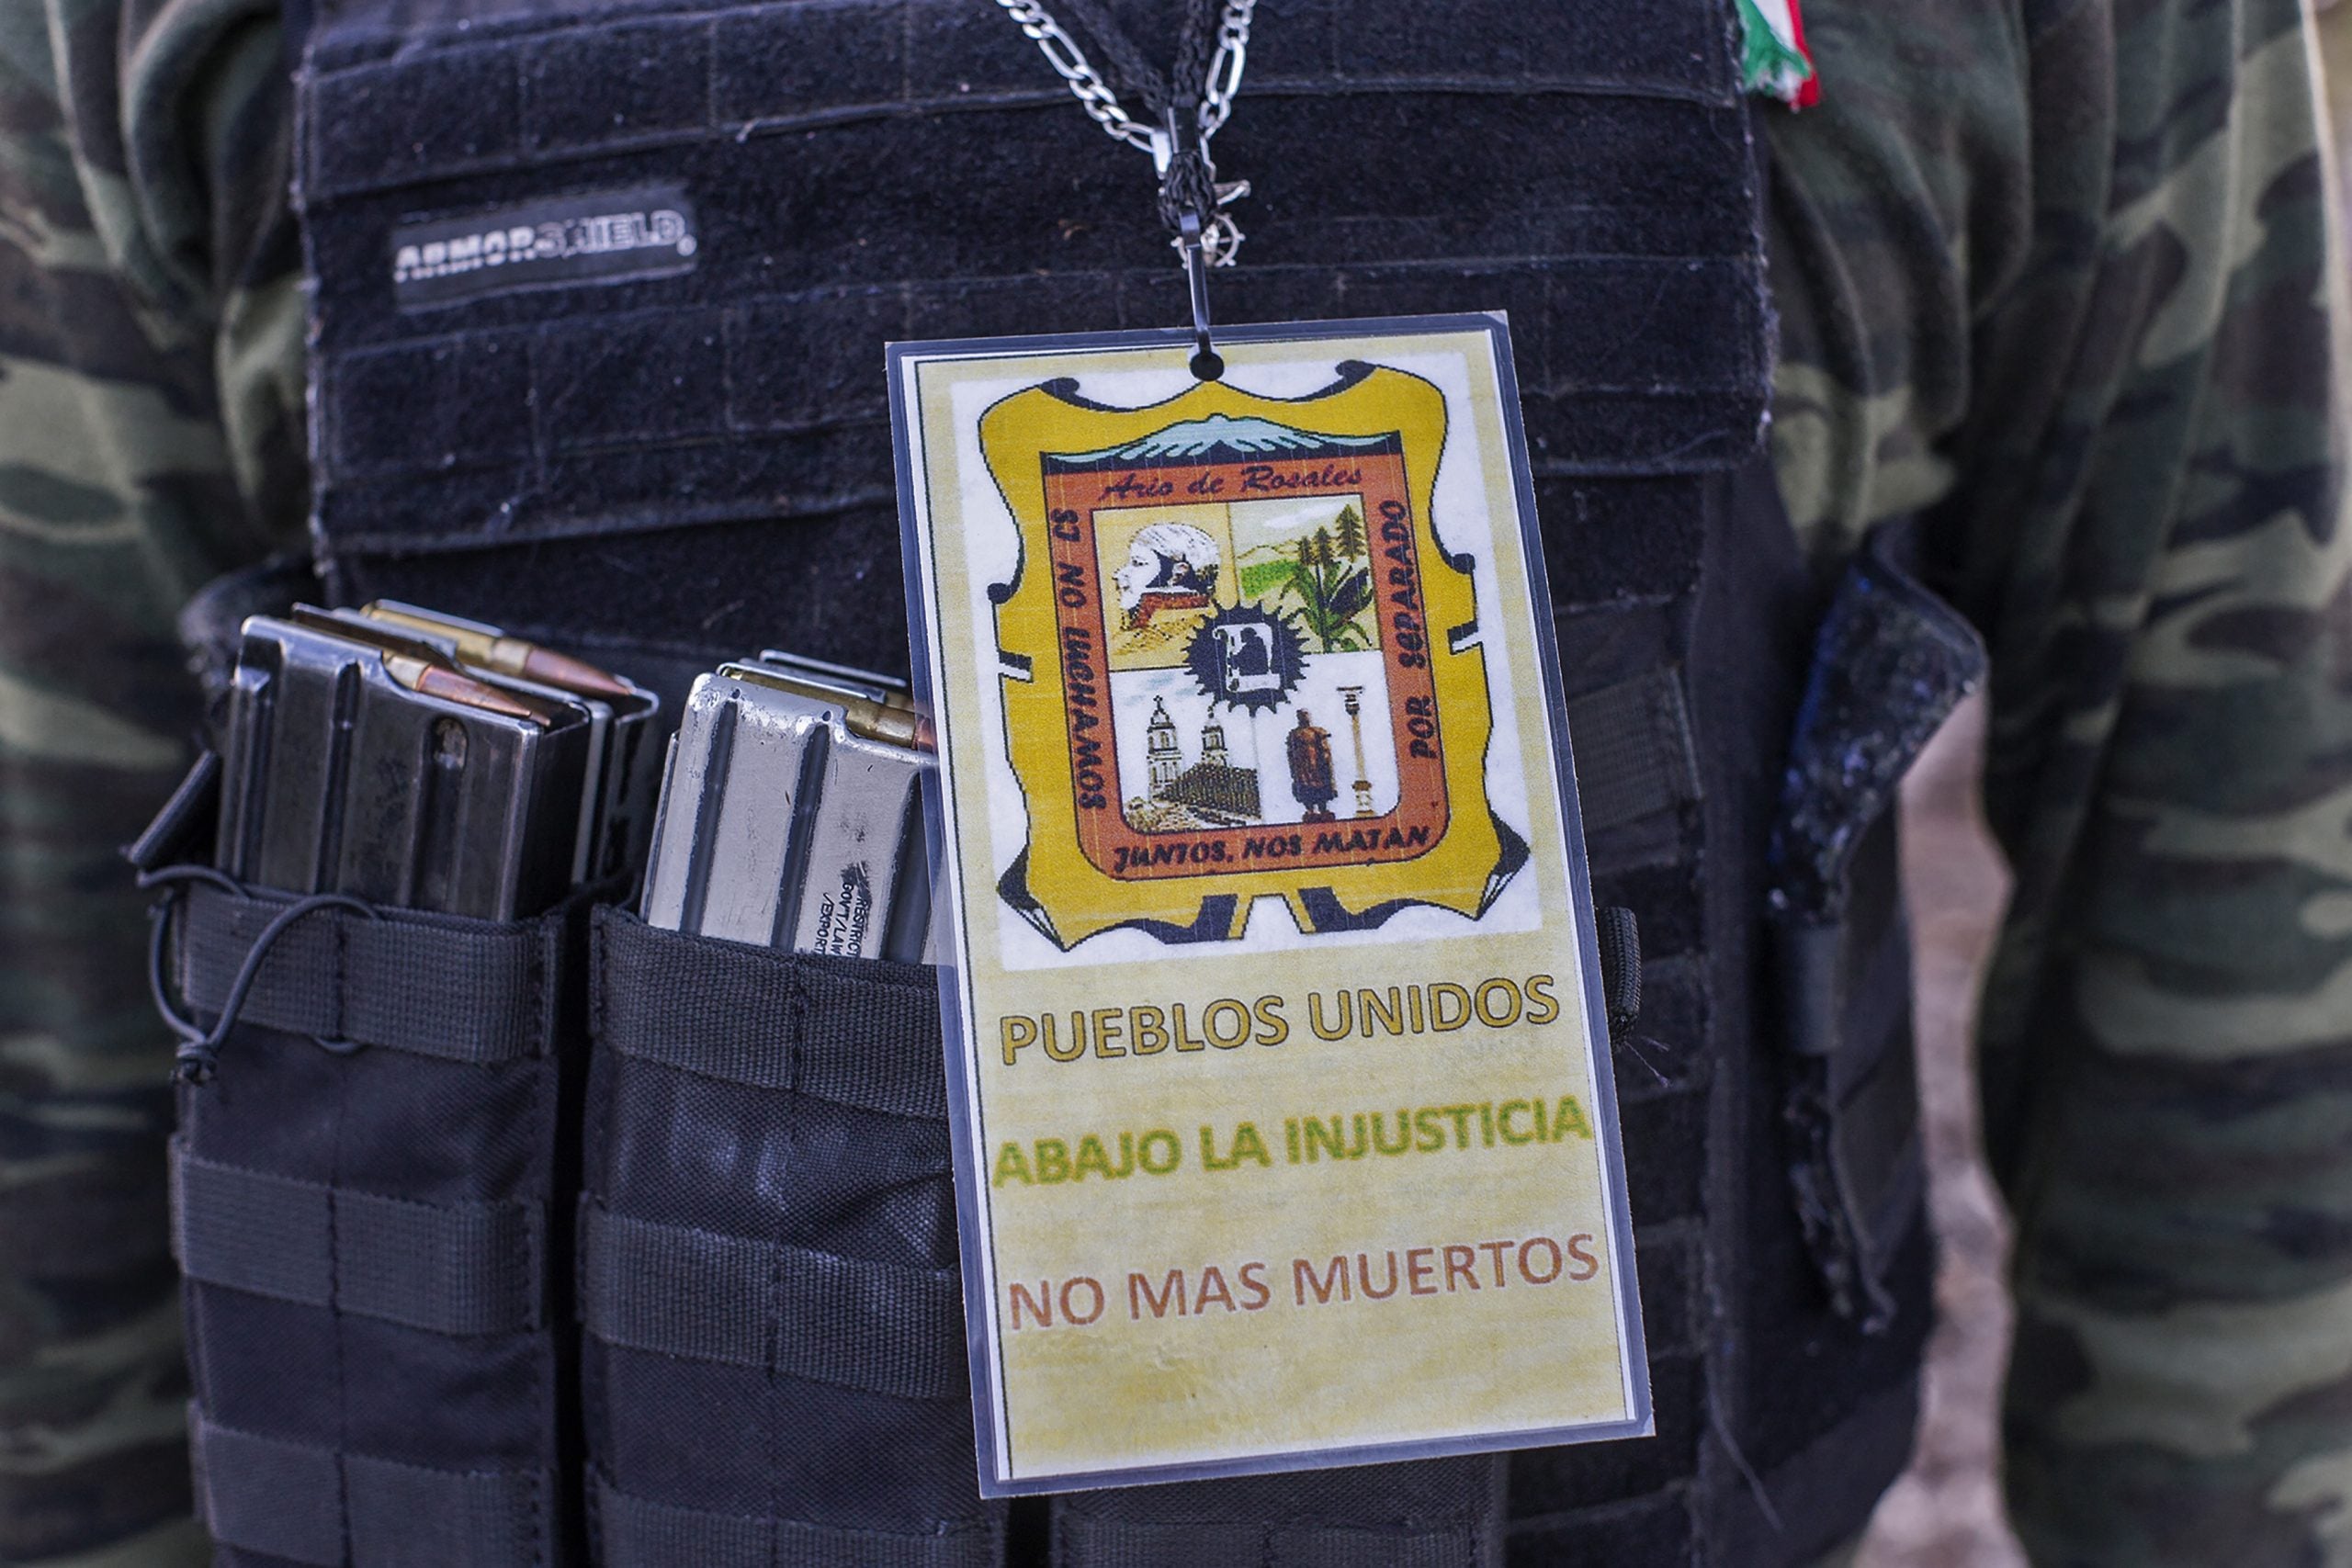 Vista de la insignia de un miembro del grupo de autodefensa Pueblos Unidos.